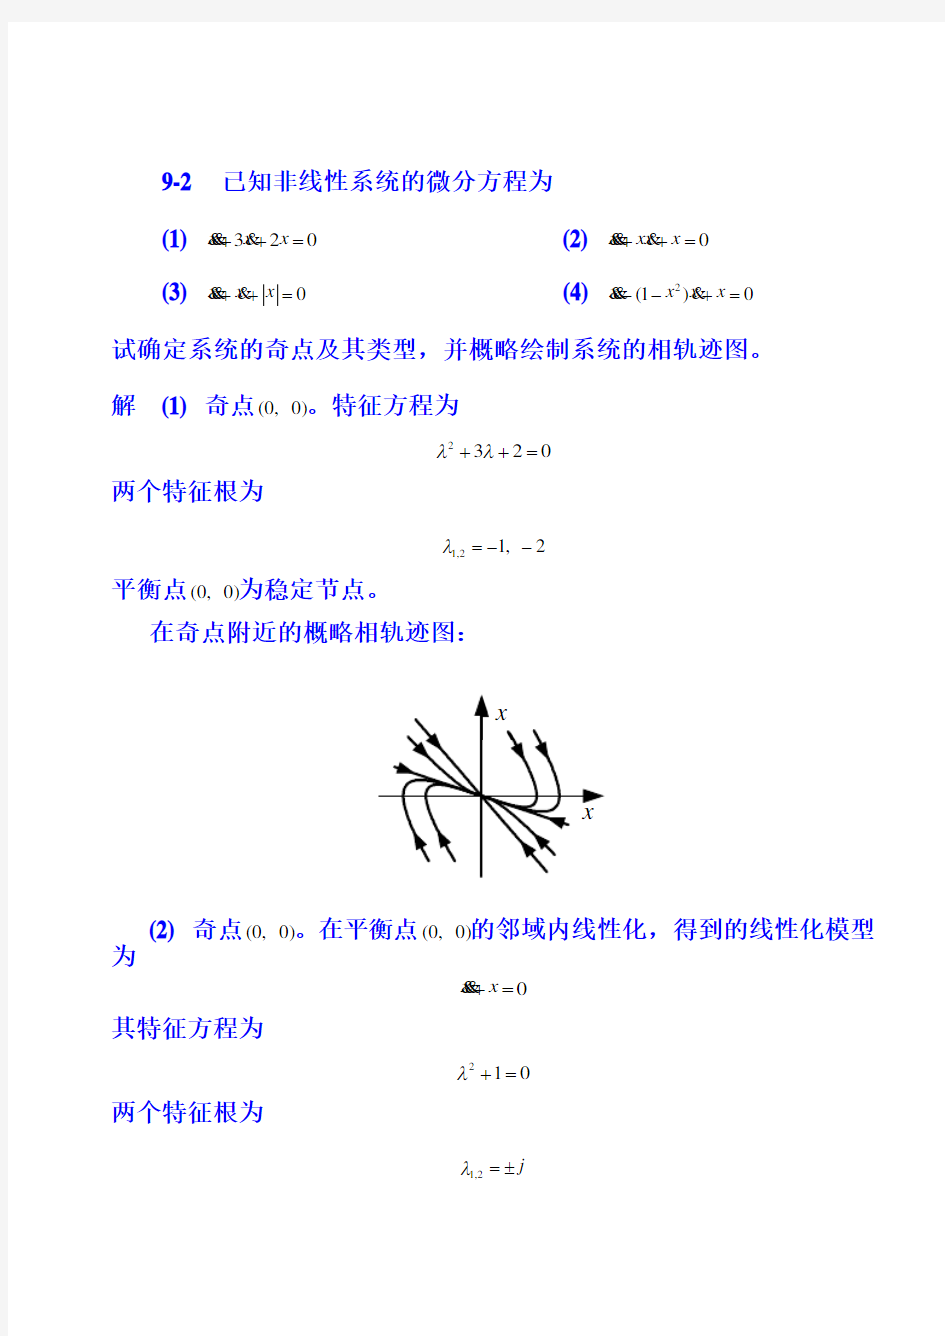 重庆大学自动控制原理2第9章 习题参考答案_作业